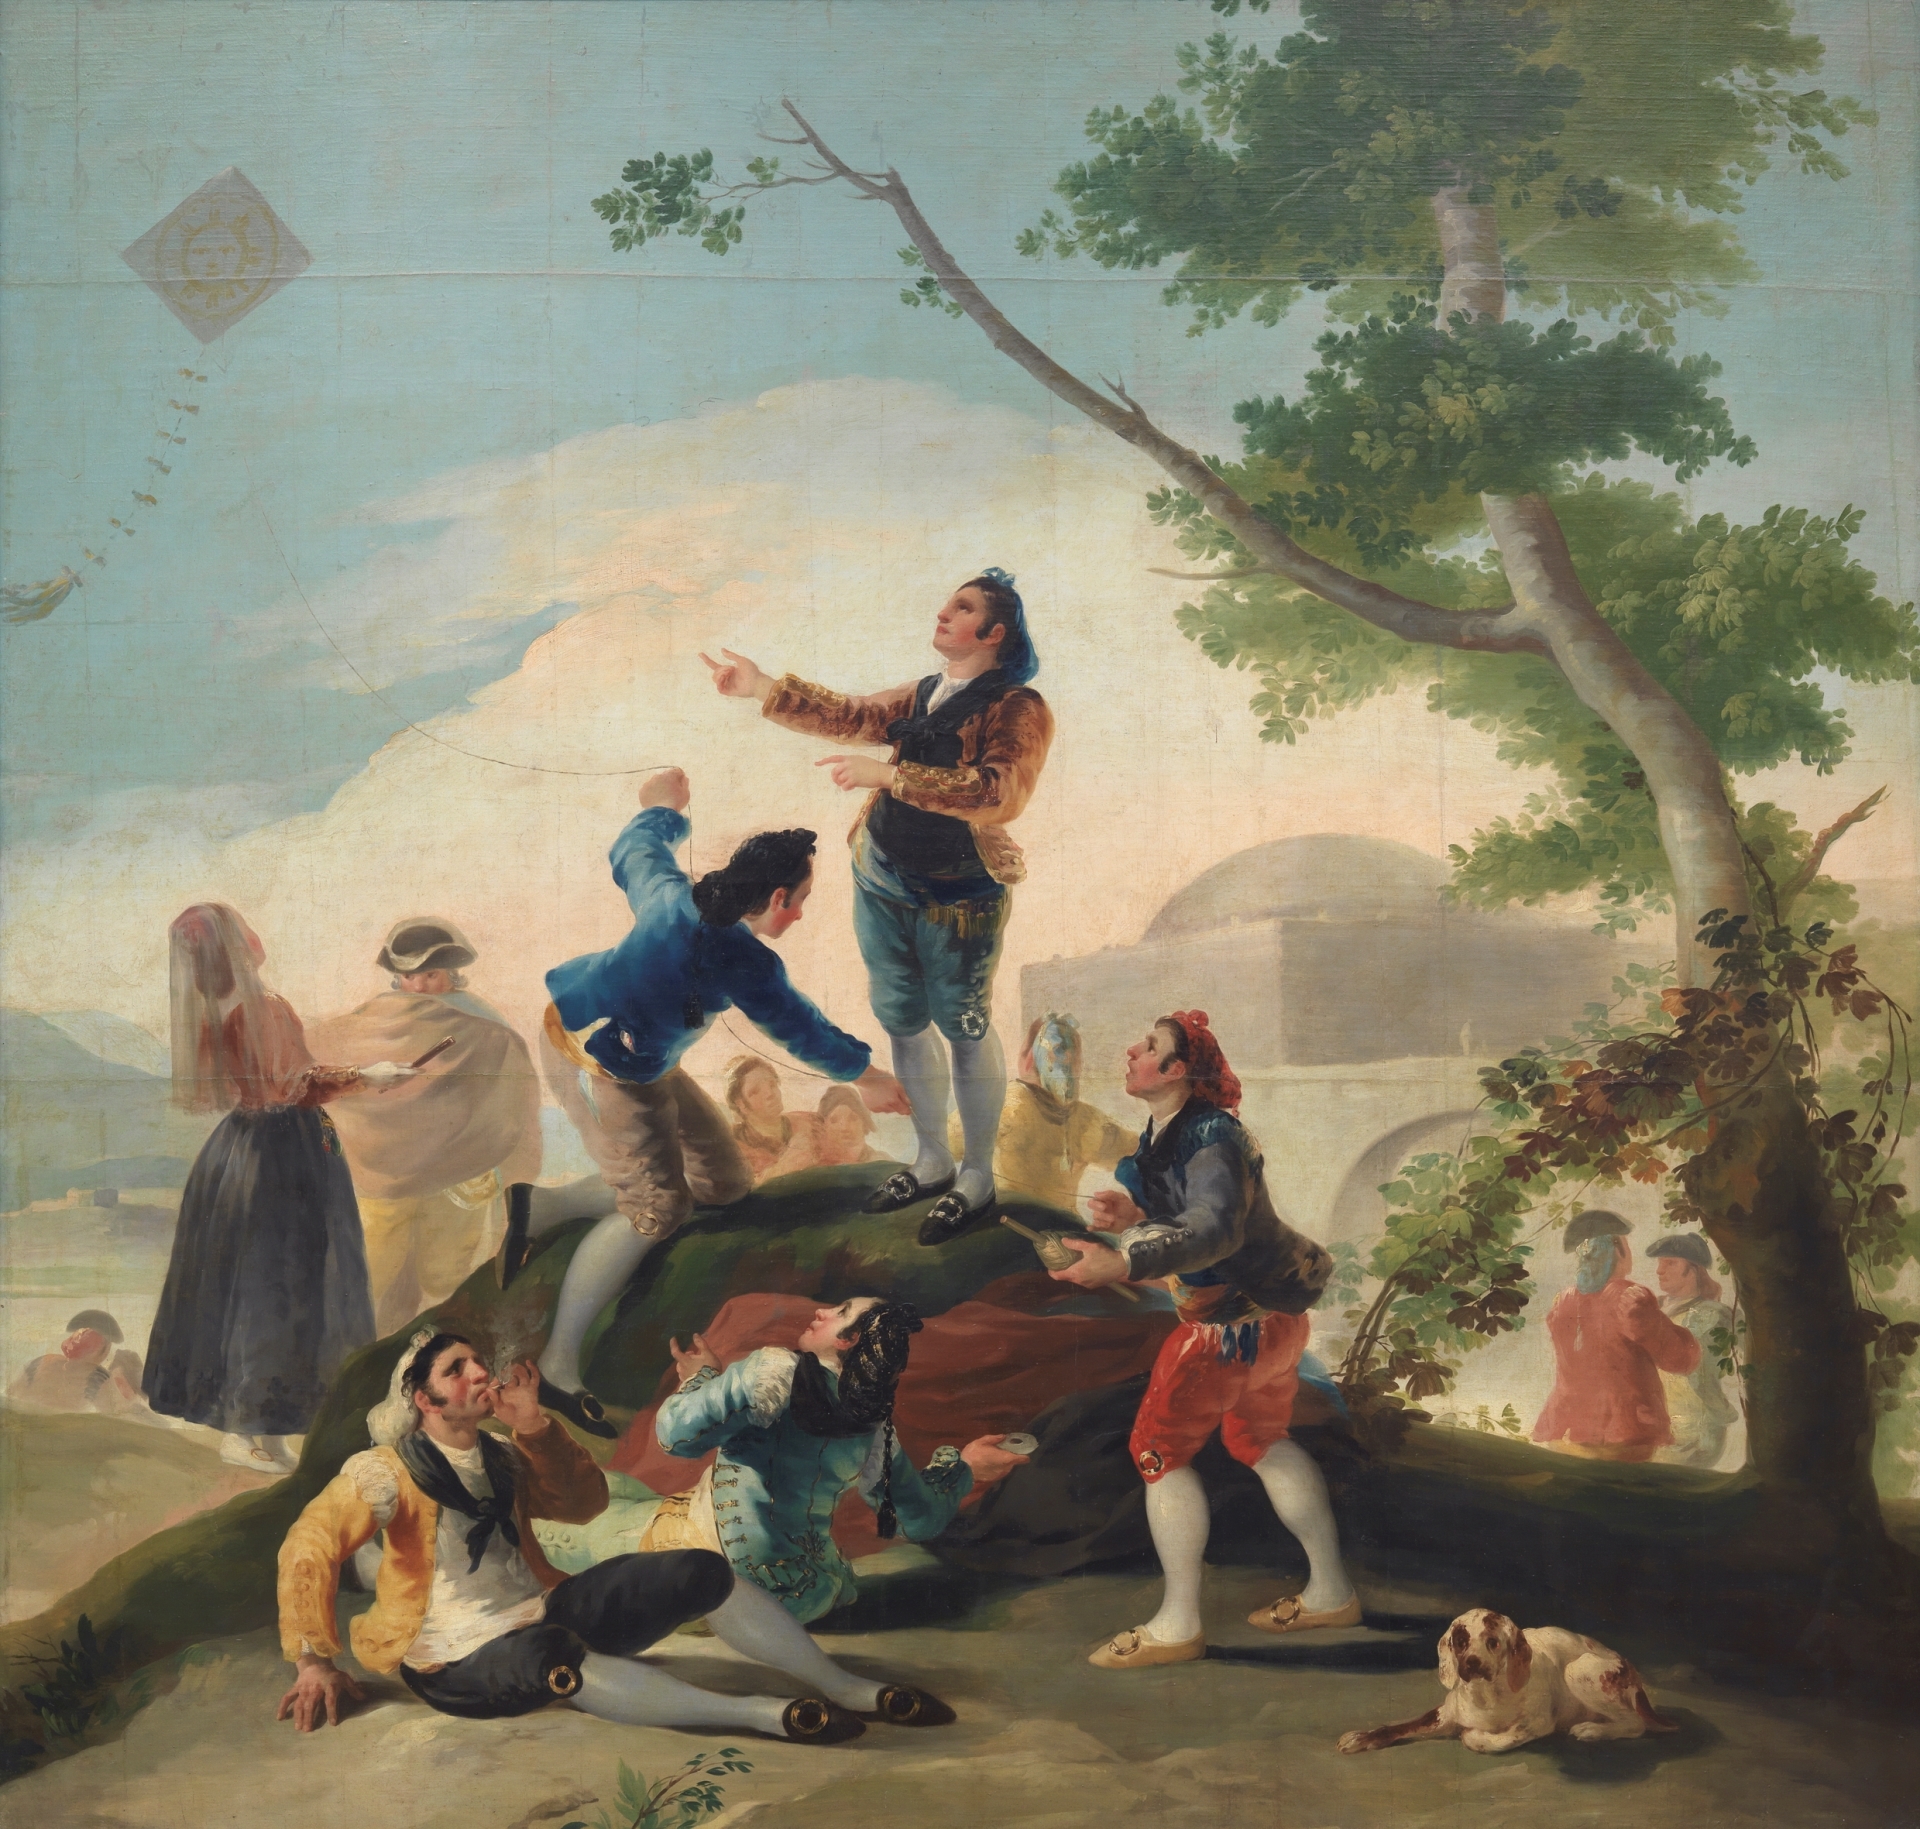 Uçurtma (The Kite) by Francisco Goya - 1777-1778 - 269 x 285 cm 